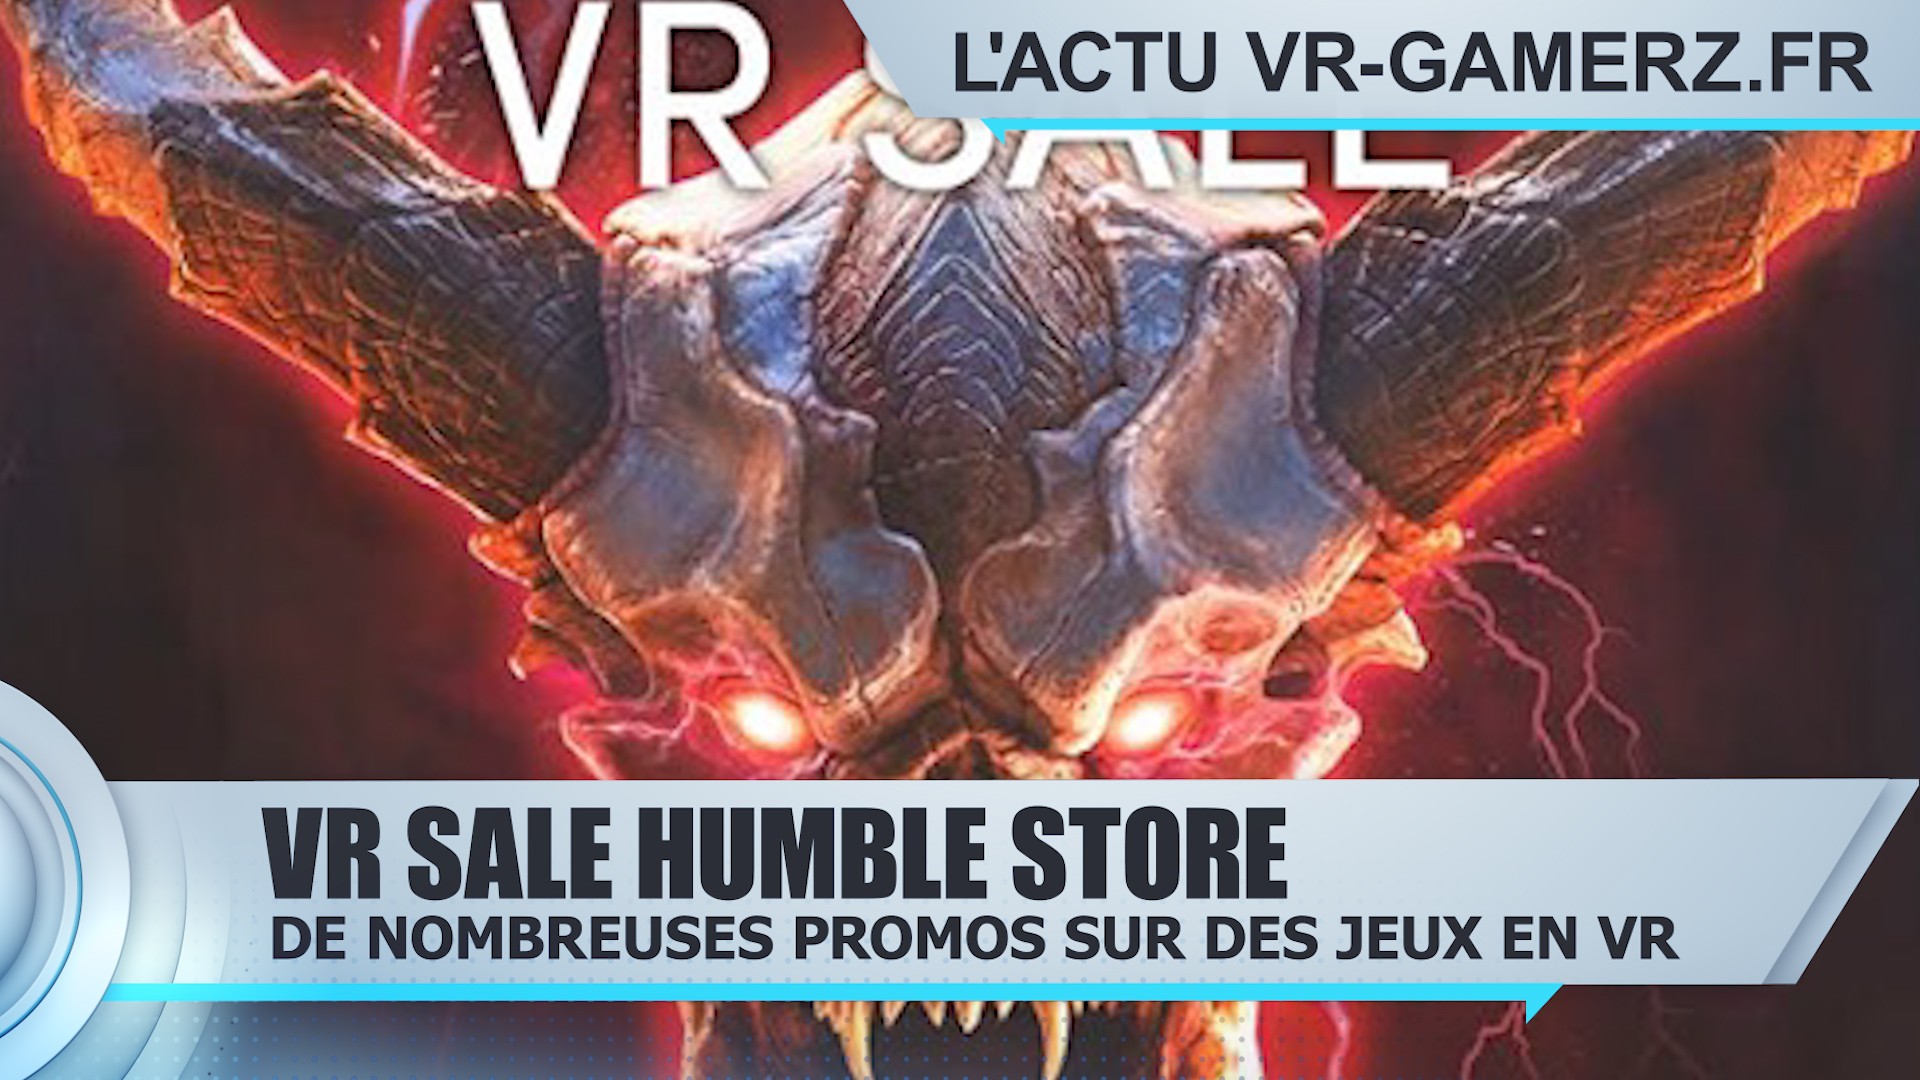 Le humble store propose des promotions sur des jeux en VR !